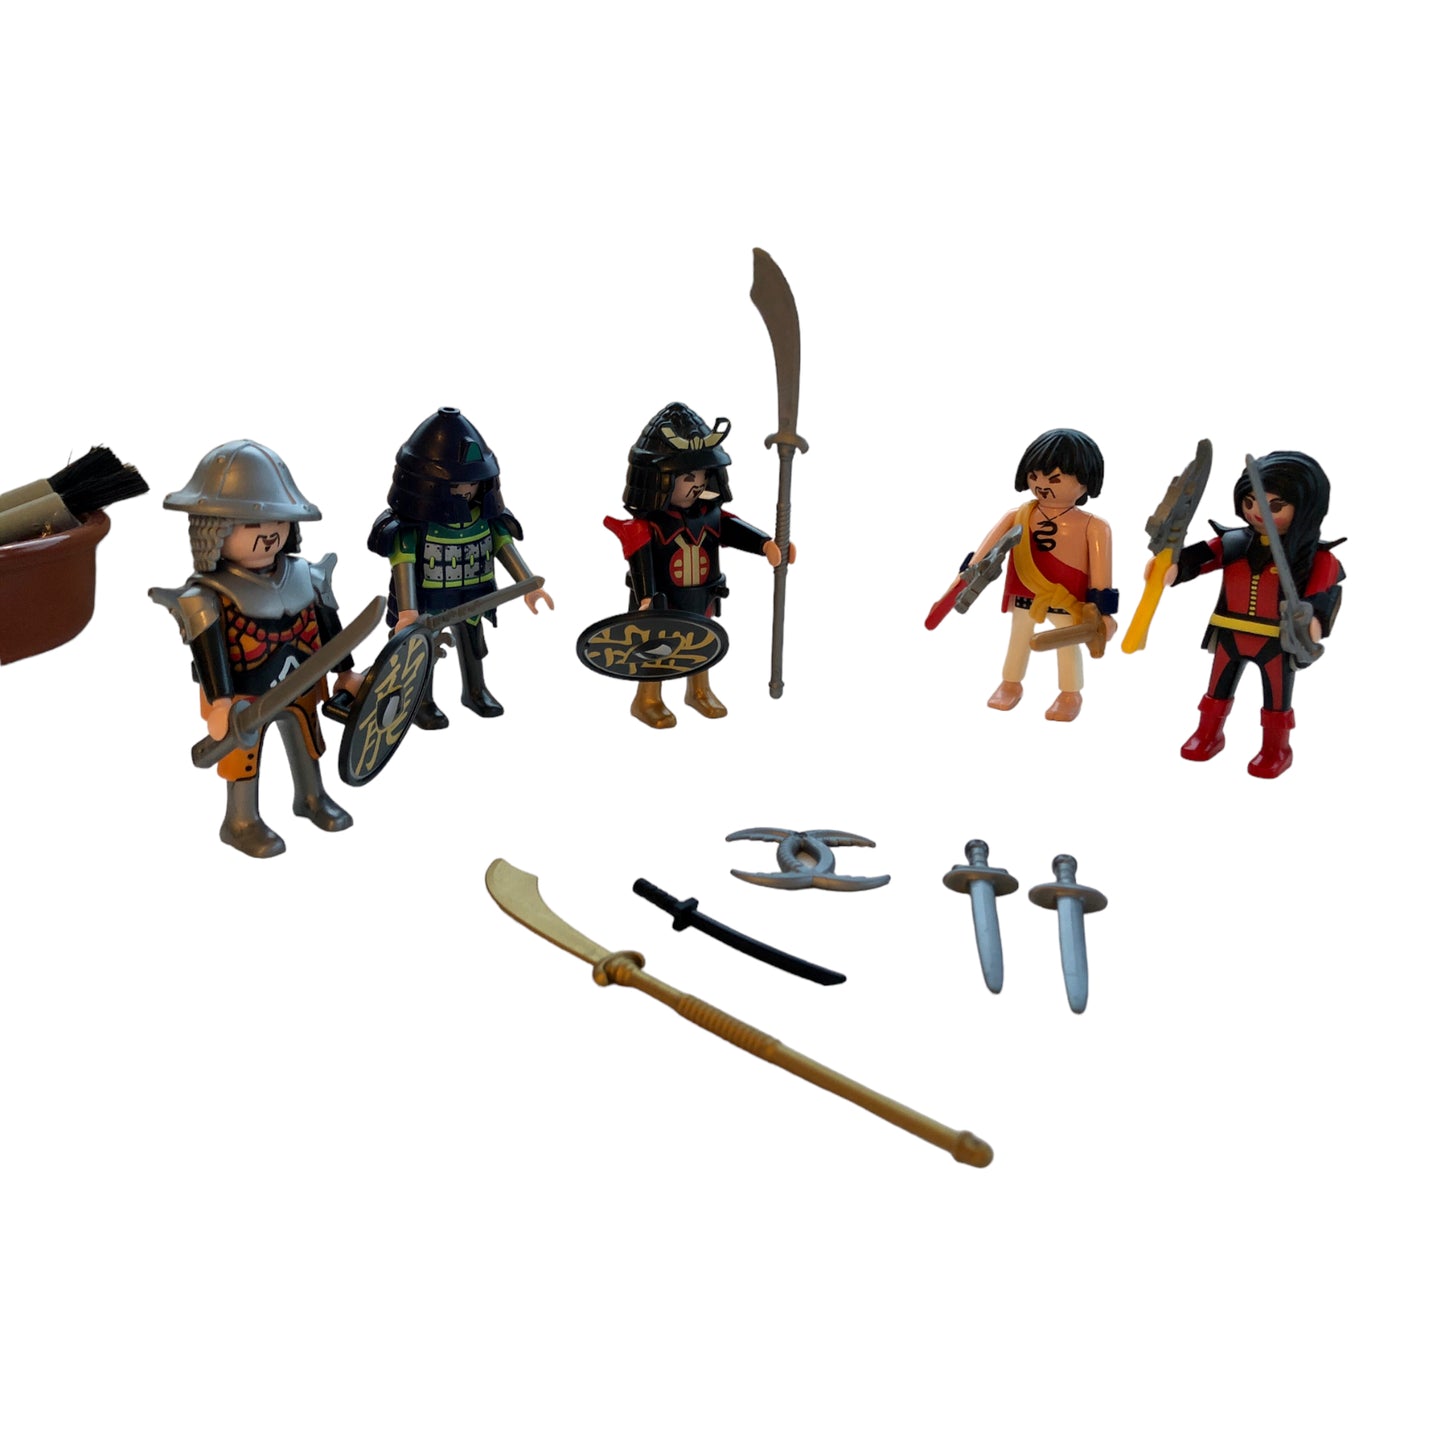 Playmobil ® Samurais and Warriors